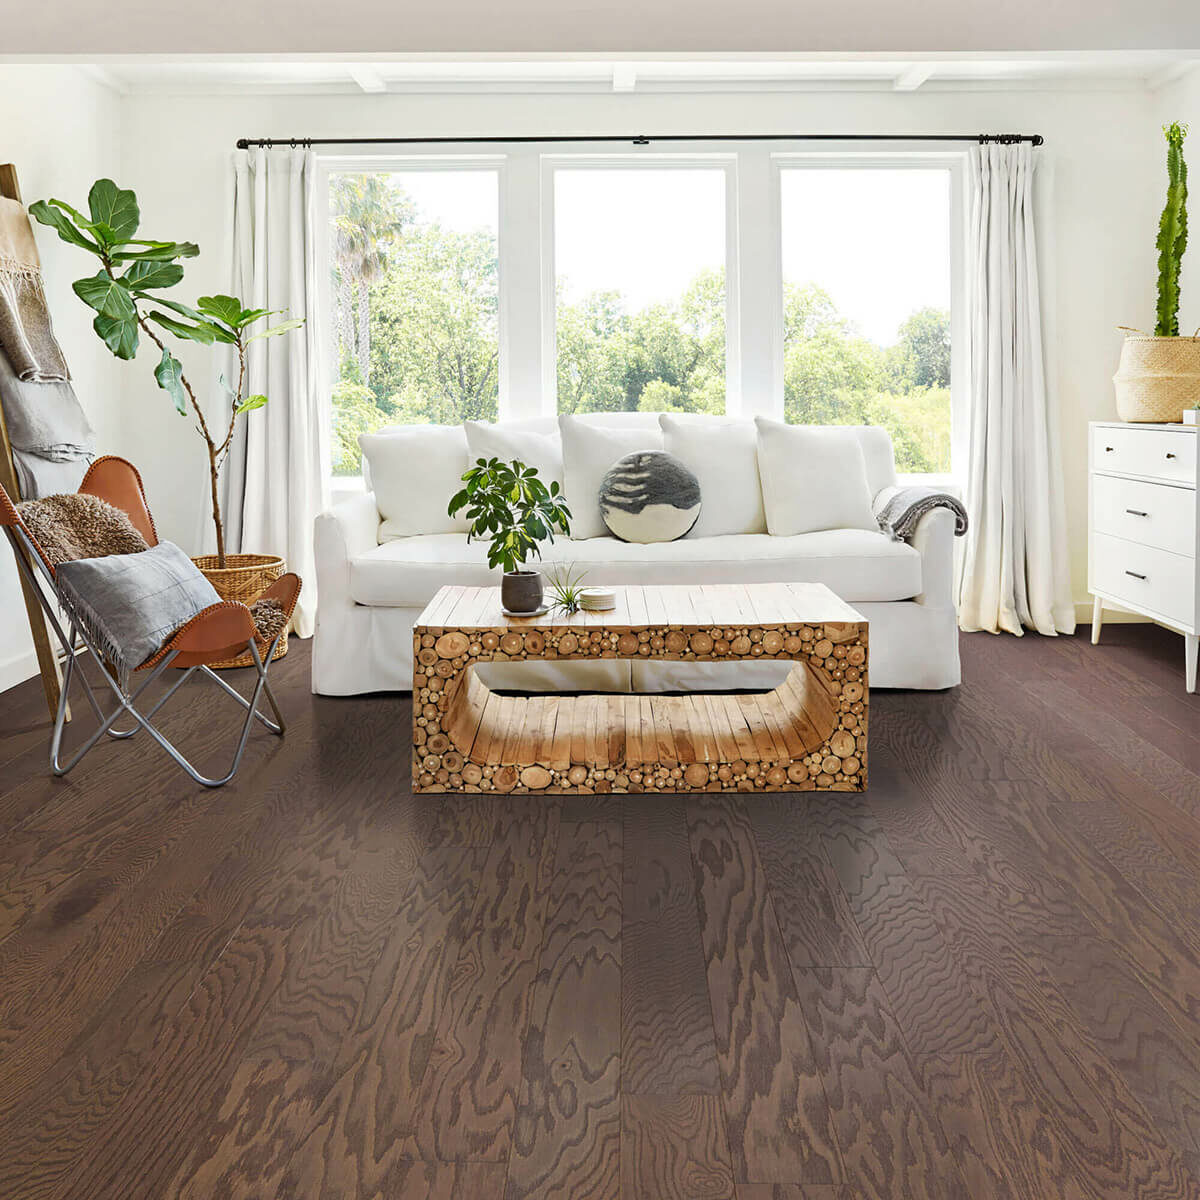 Hardwood flooring | CarpetsPlus of Steamboat Springs